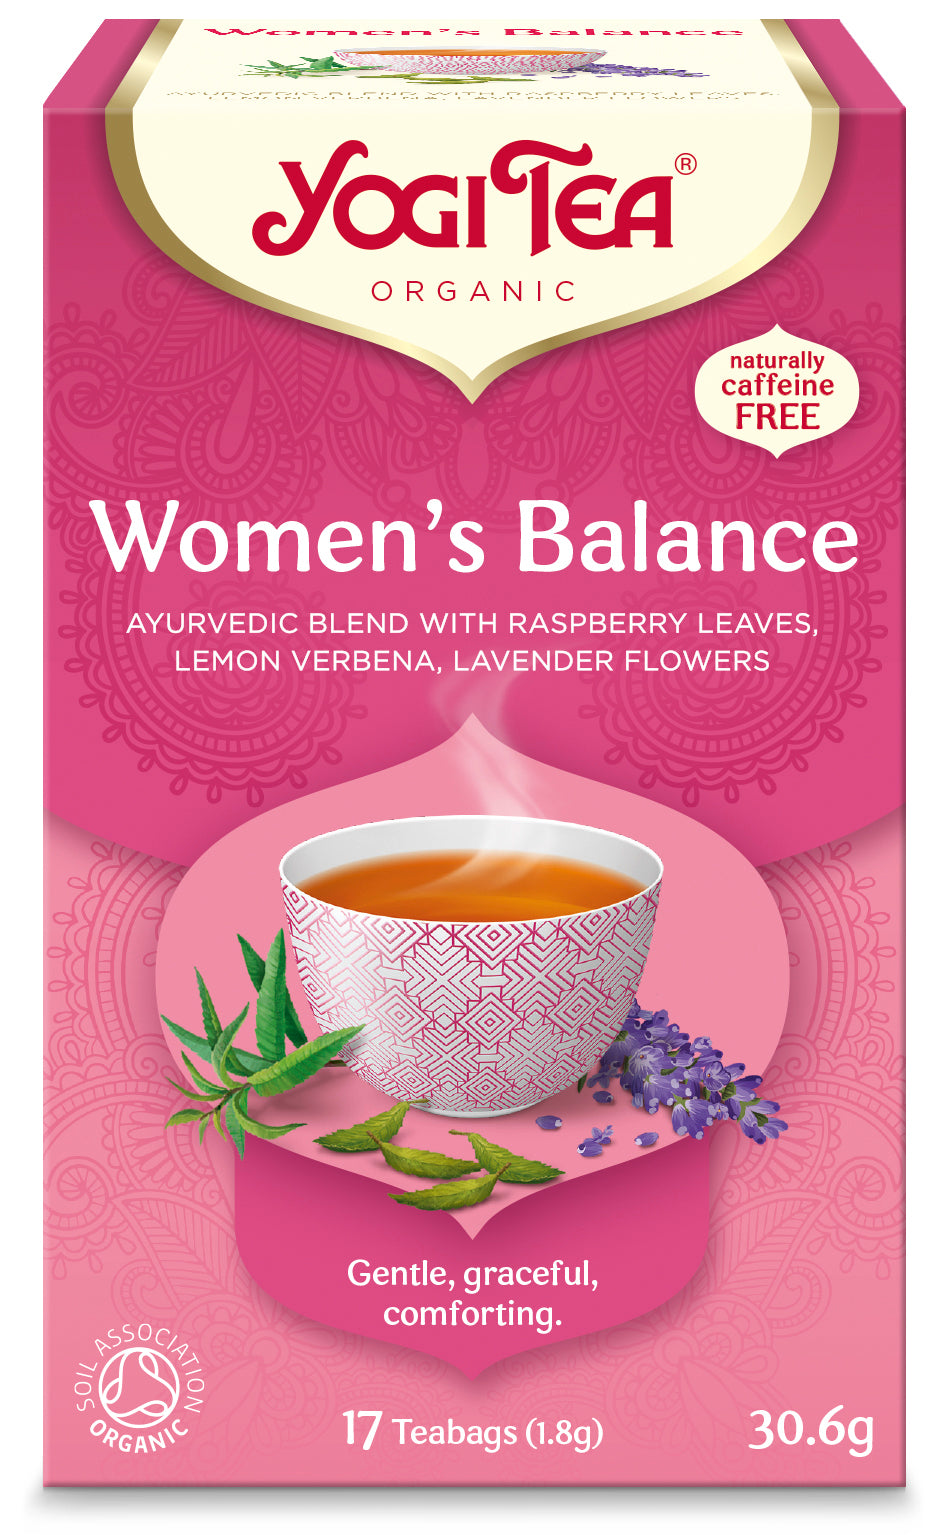 Yogi Tea Women´s Balance - mieto teesekoitus naiselle 17 teepussia.